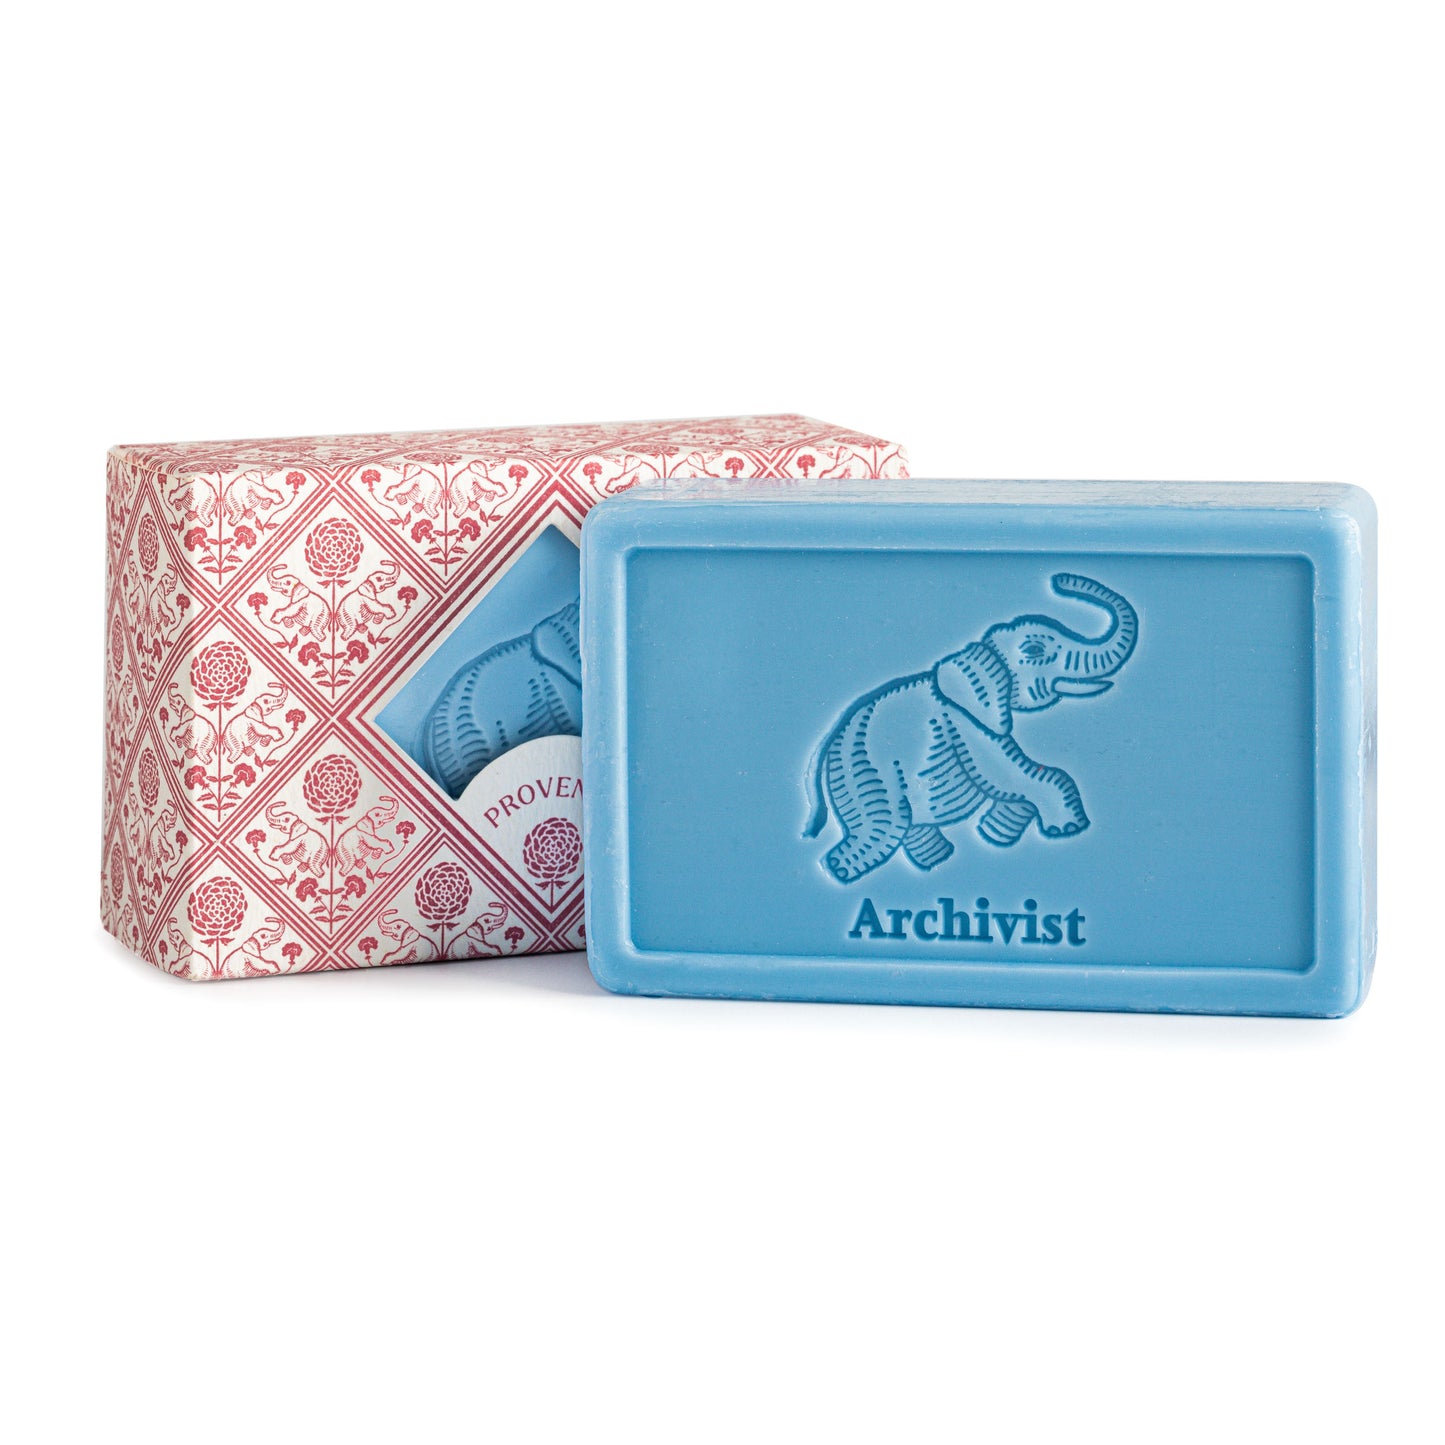 Archivist L'éléphant S004 Provence Hand Soap